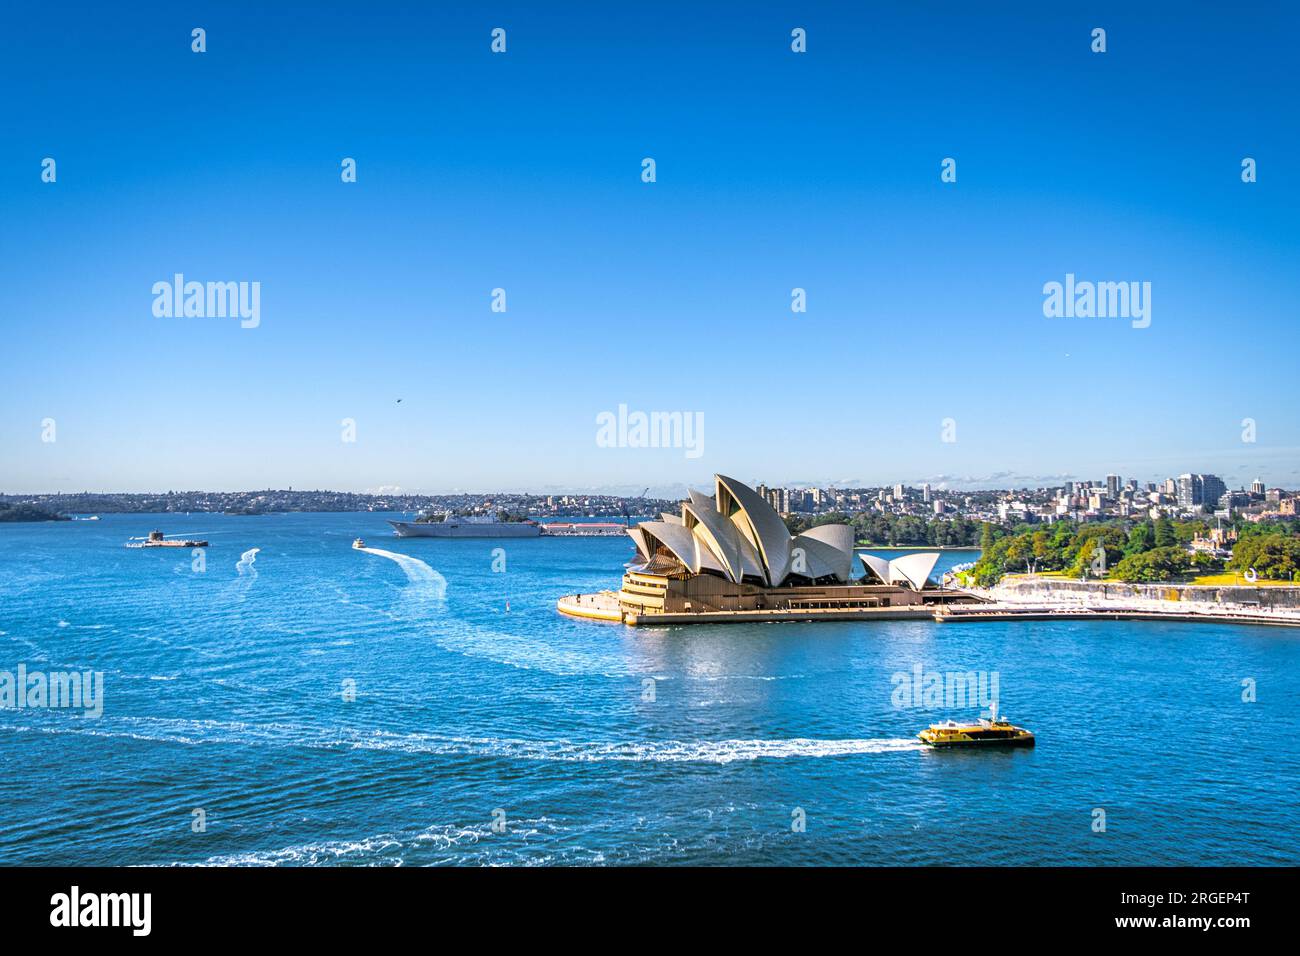 Ein geschäftiger Vormittag im Opernhaus von Sydney, mit Booten, die herumfahren Stockfoto